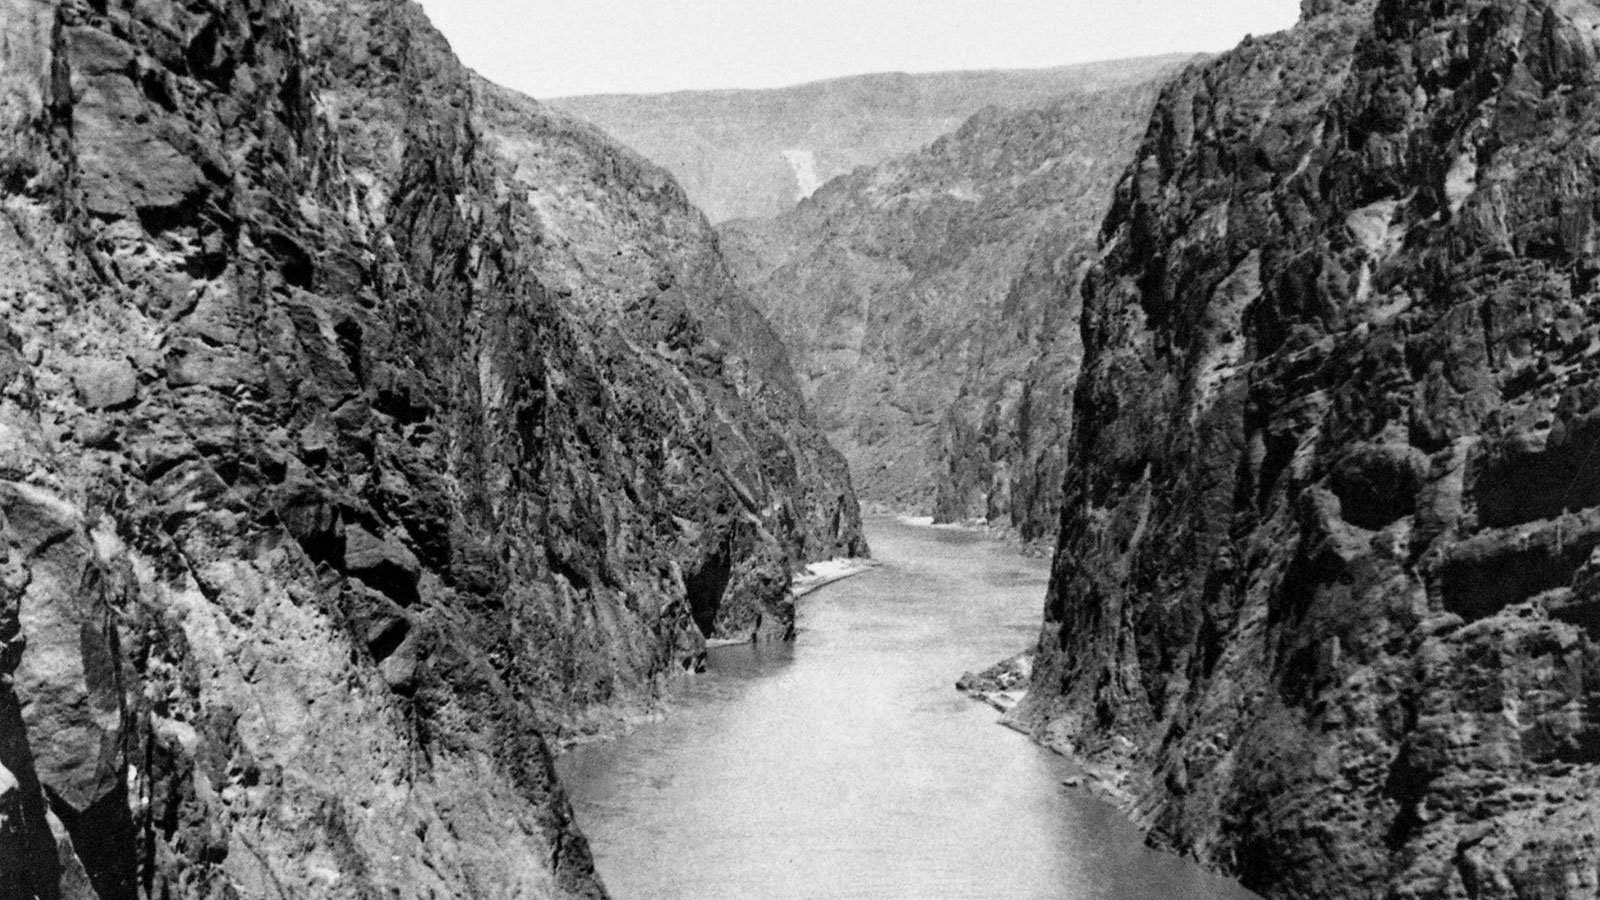 The Colorado River runs through Black Canyon, prior to construction on the Hoover Dam